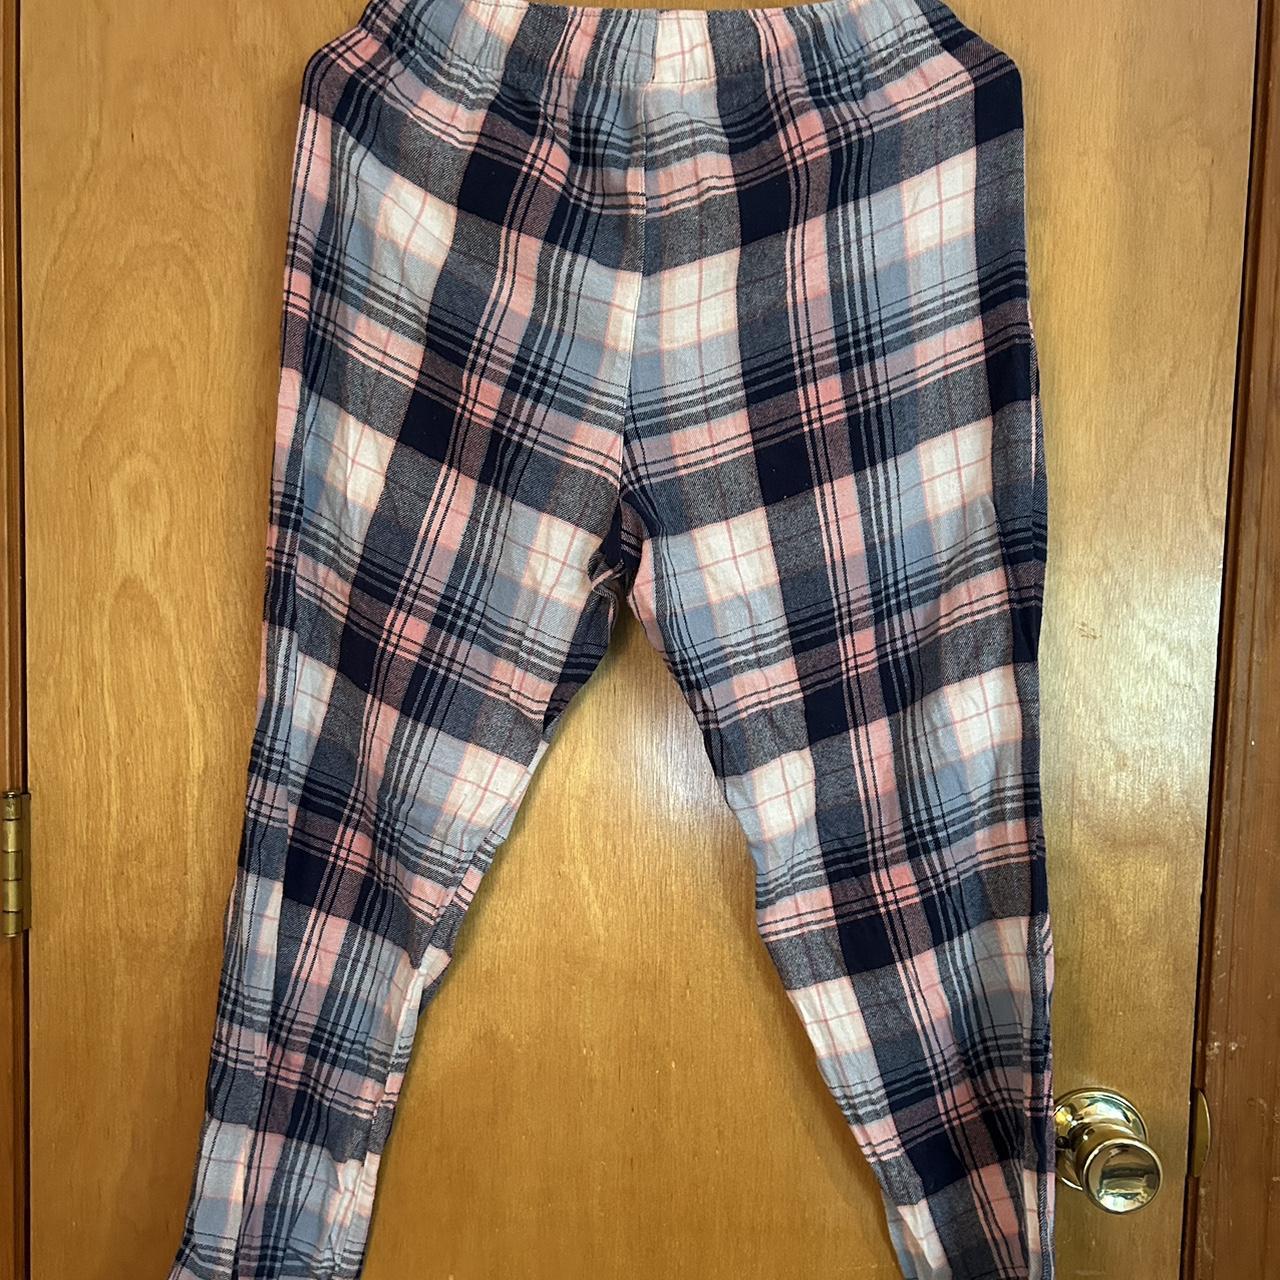 Old navy pajama pants. Worn once - Depop